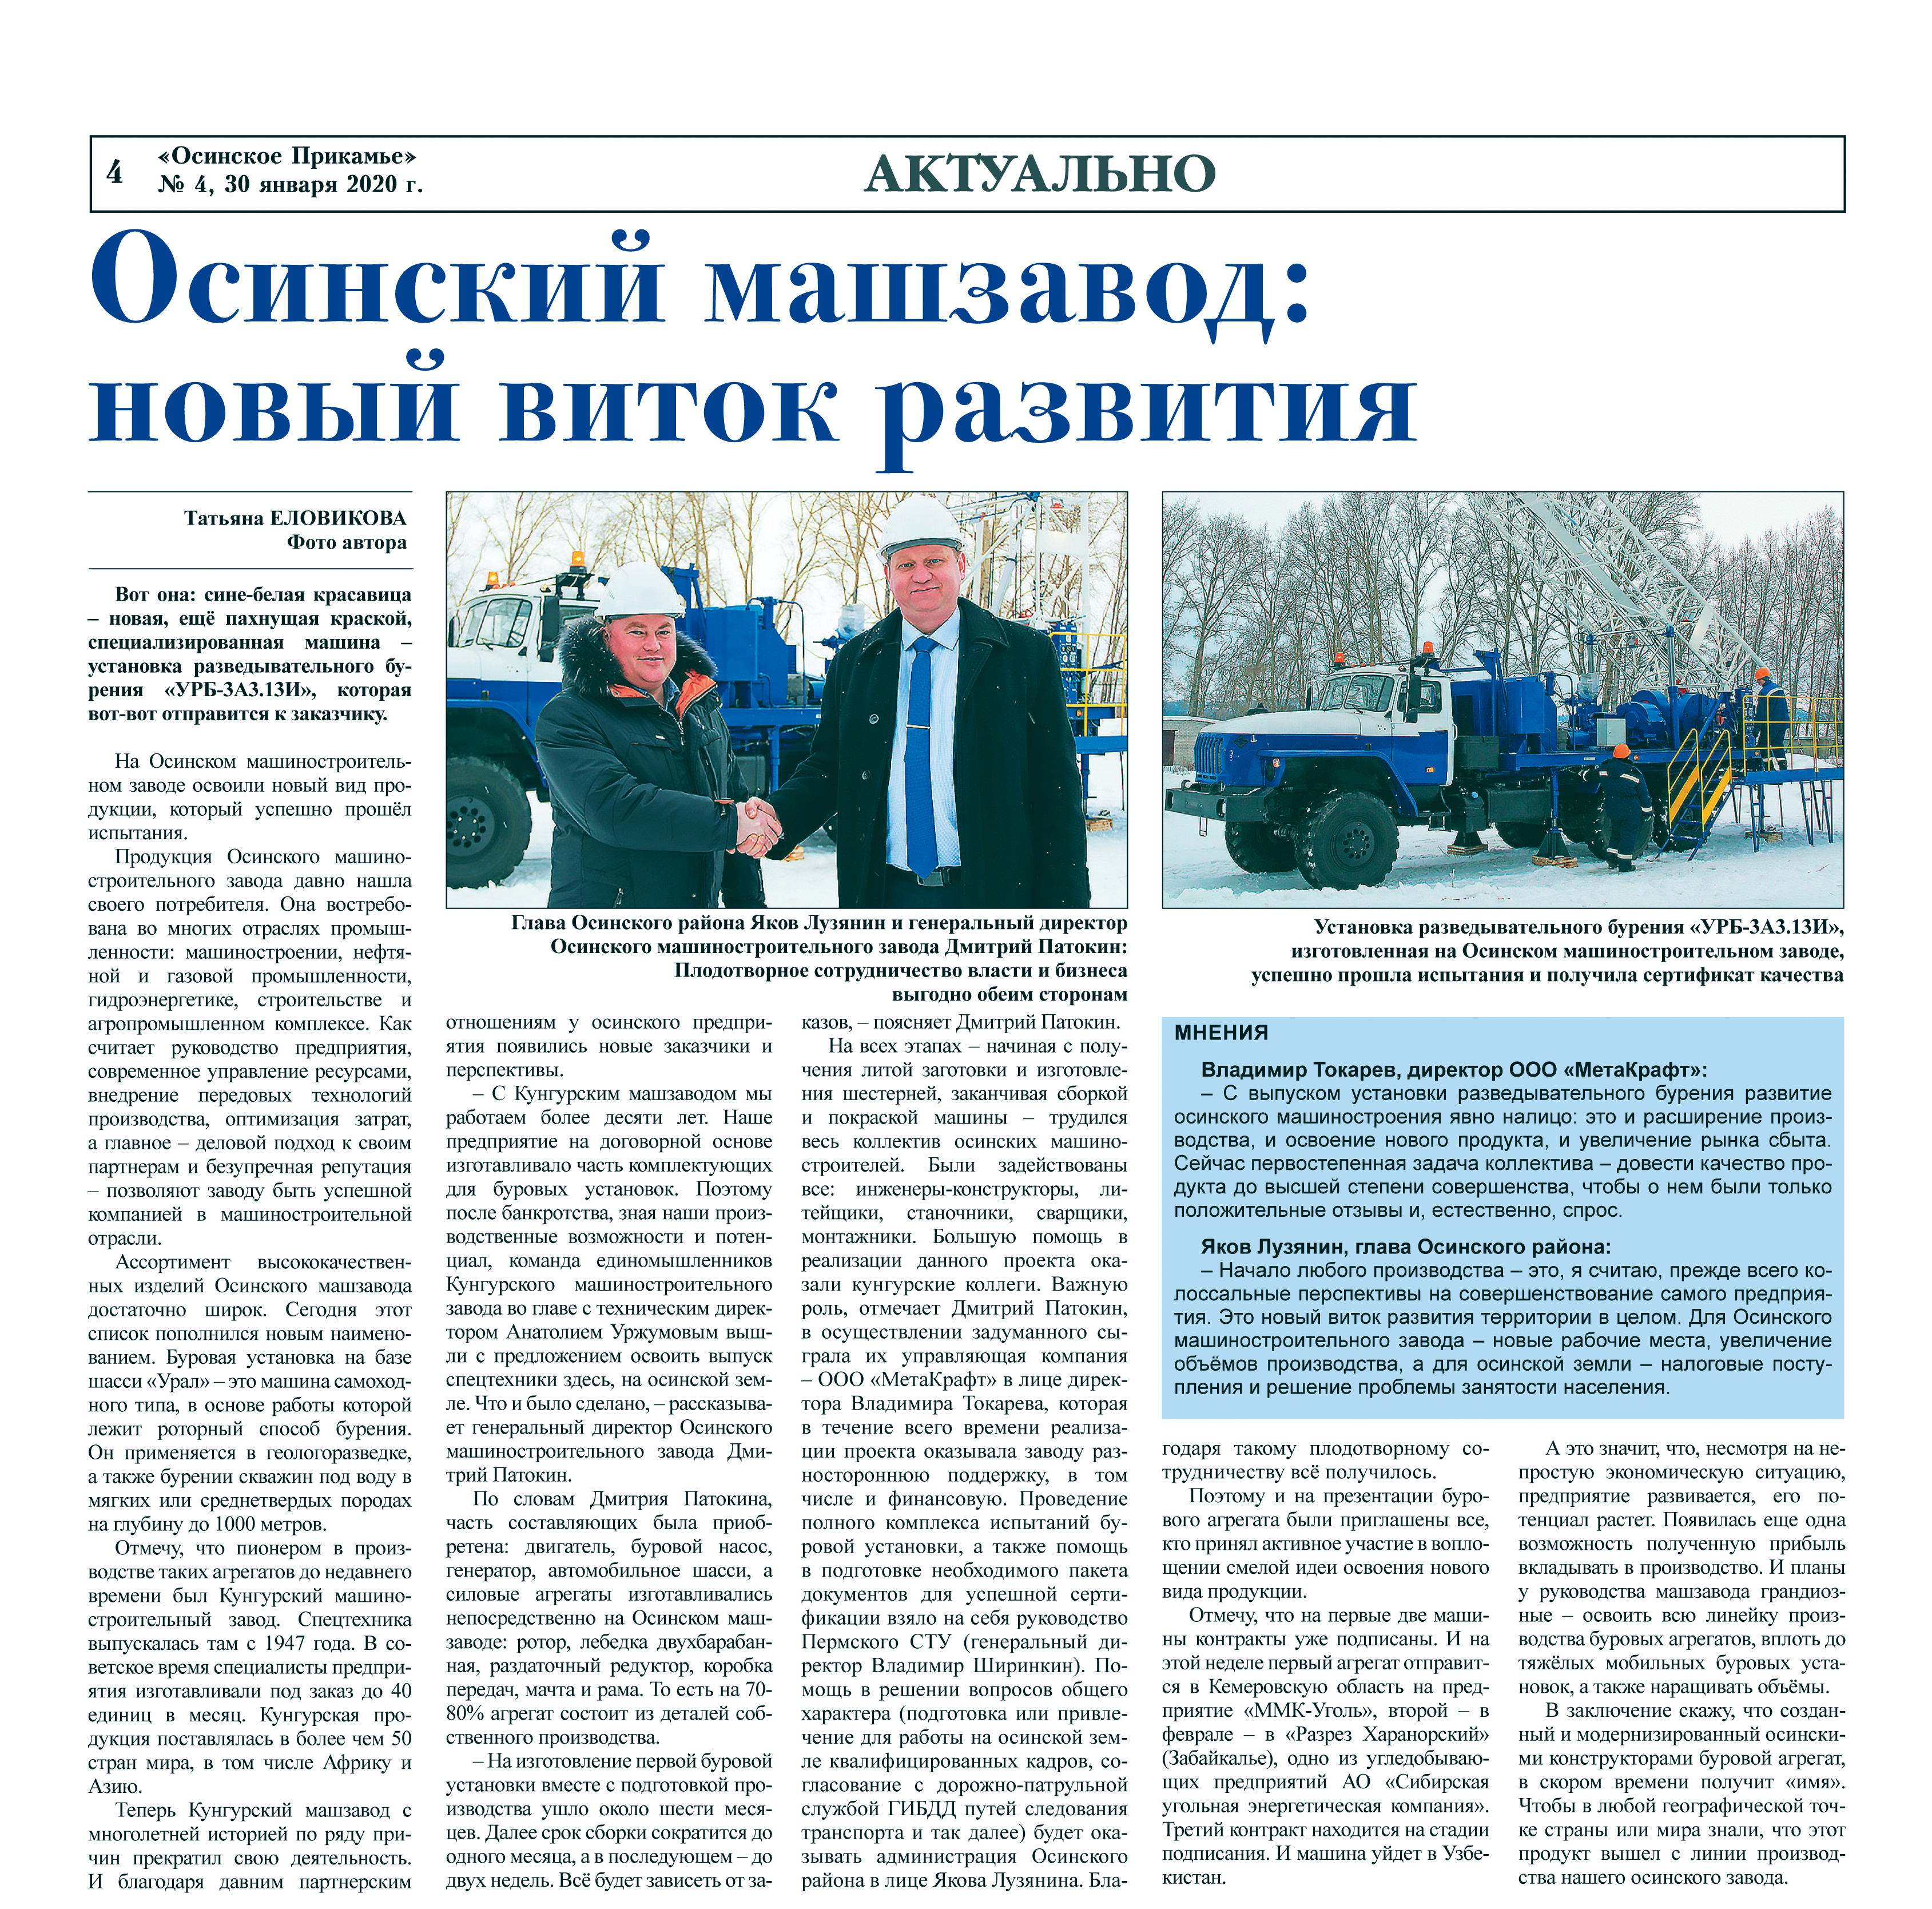 Статья в газете «Осинское Прикамье» про новый виток развития Осинского машиностроительного завода